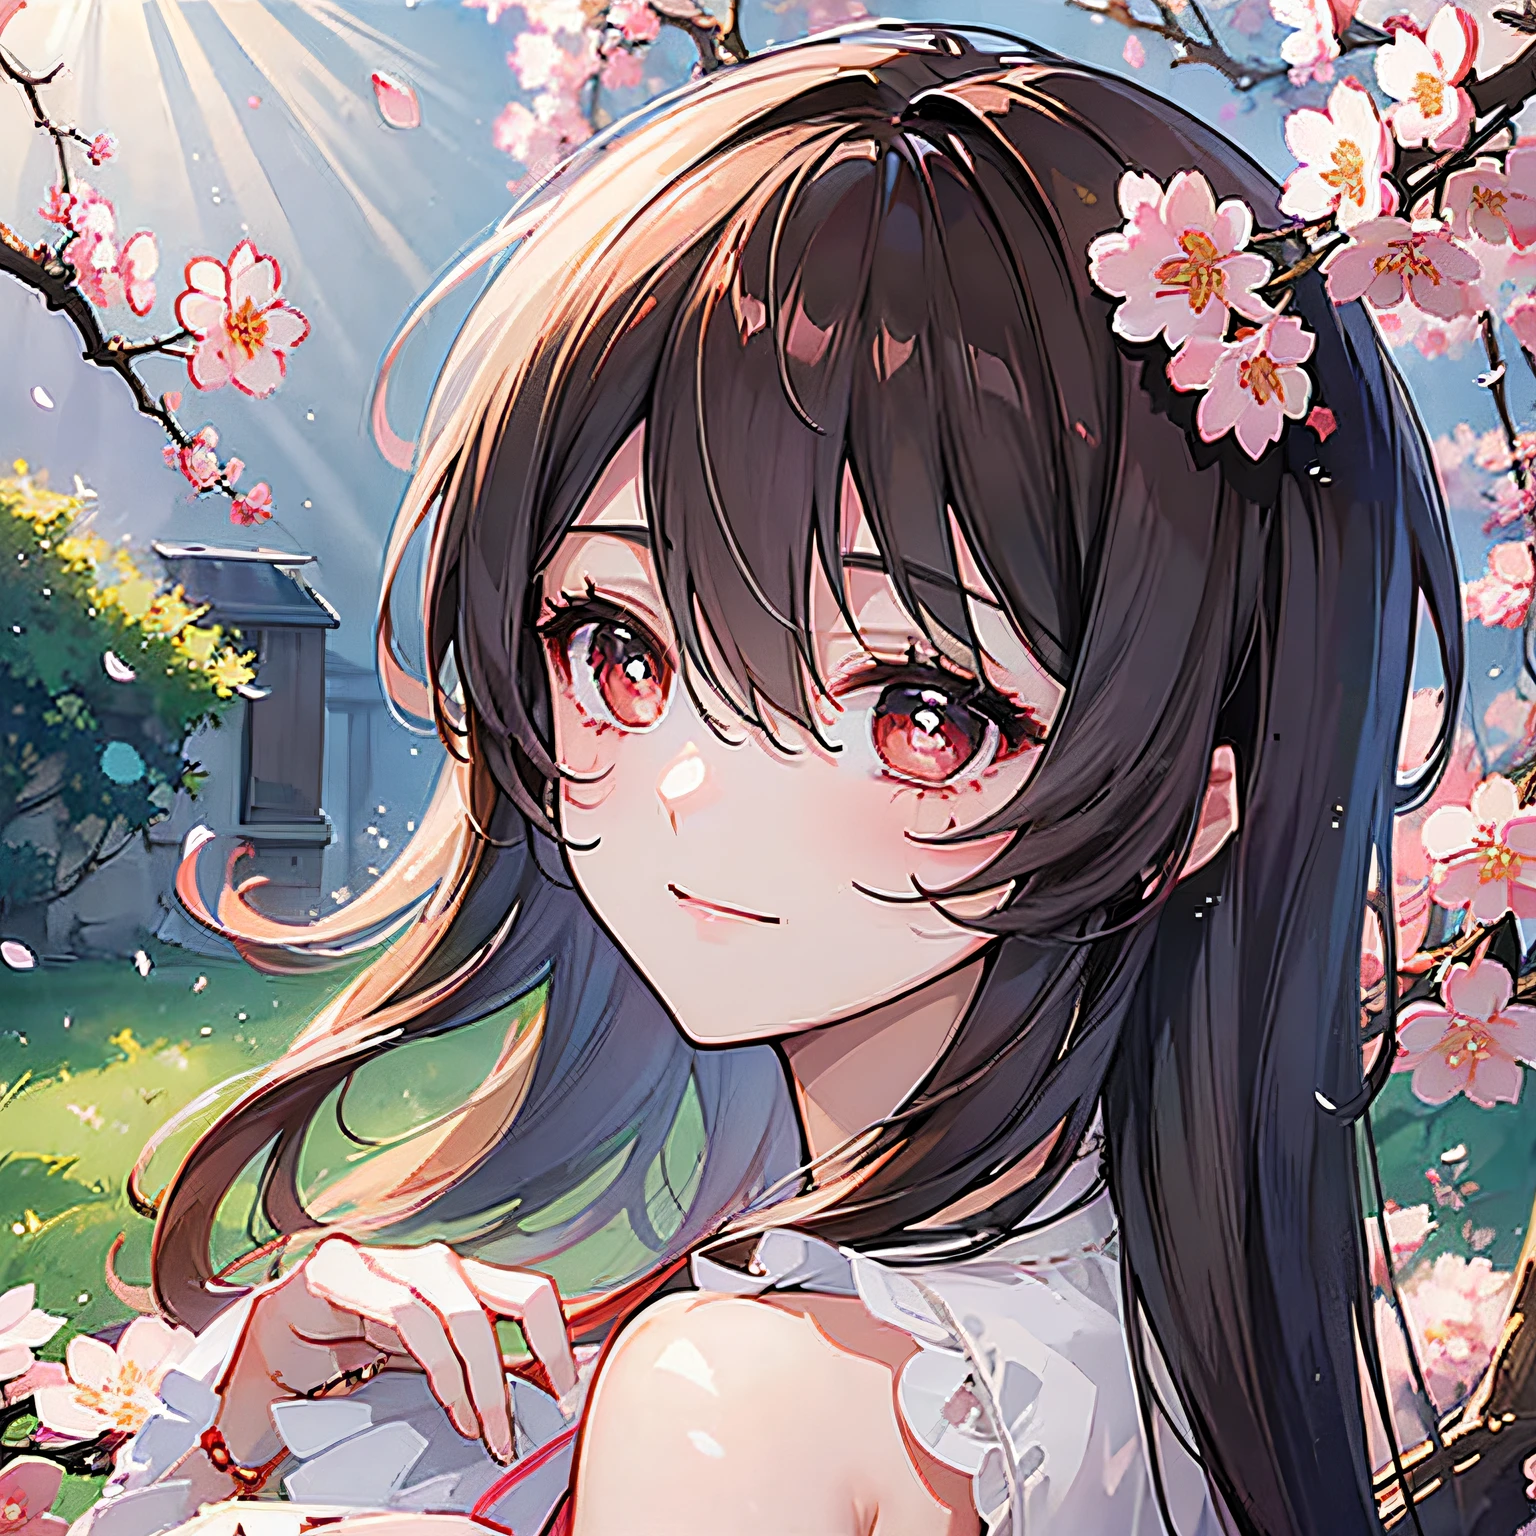 (最高品質, 傑作, 超リアル), 背景の桜の木, 遊び心のあるかわいい女の子の美しく繊細なポートレート